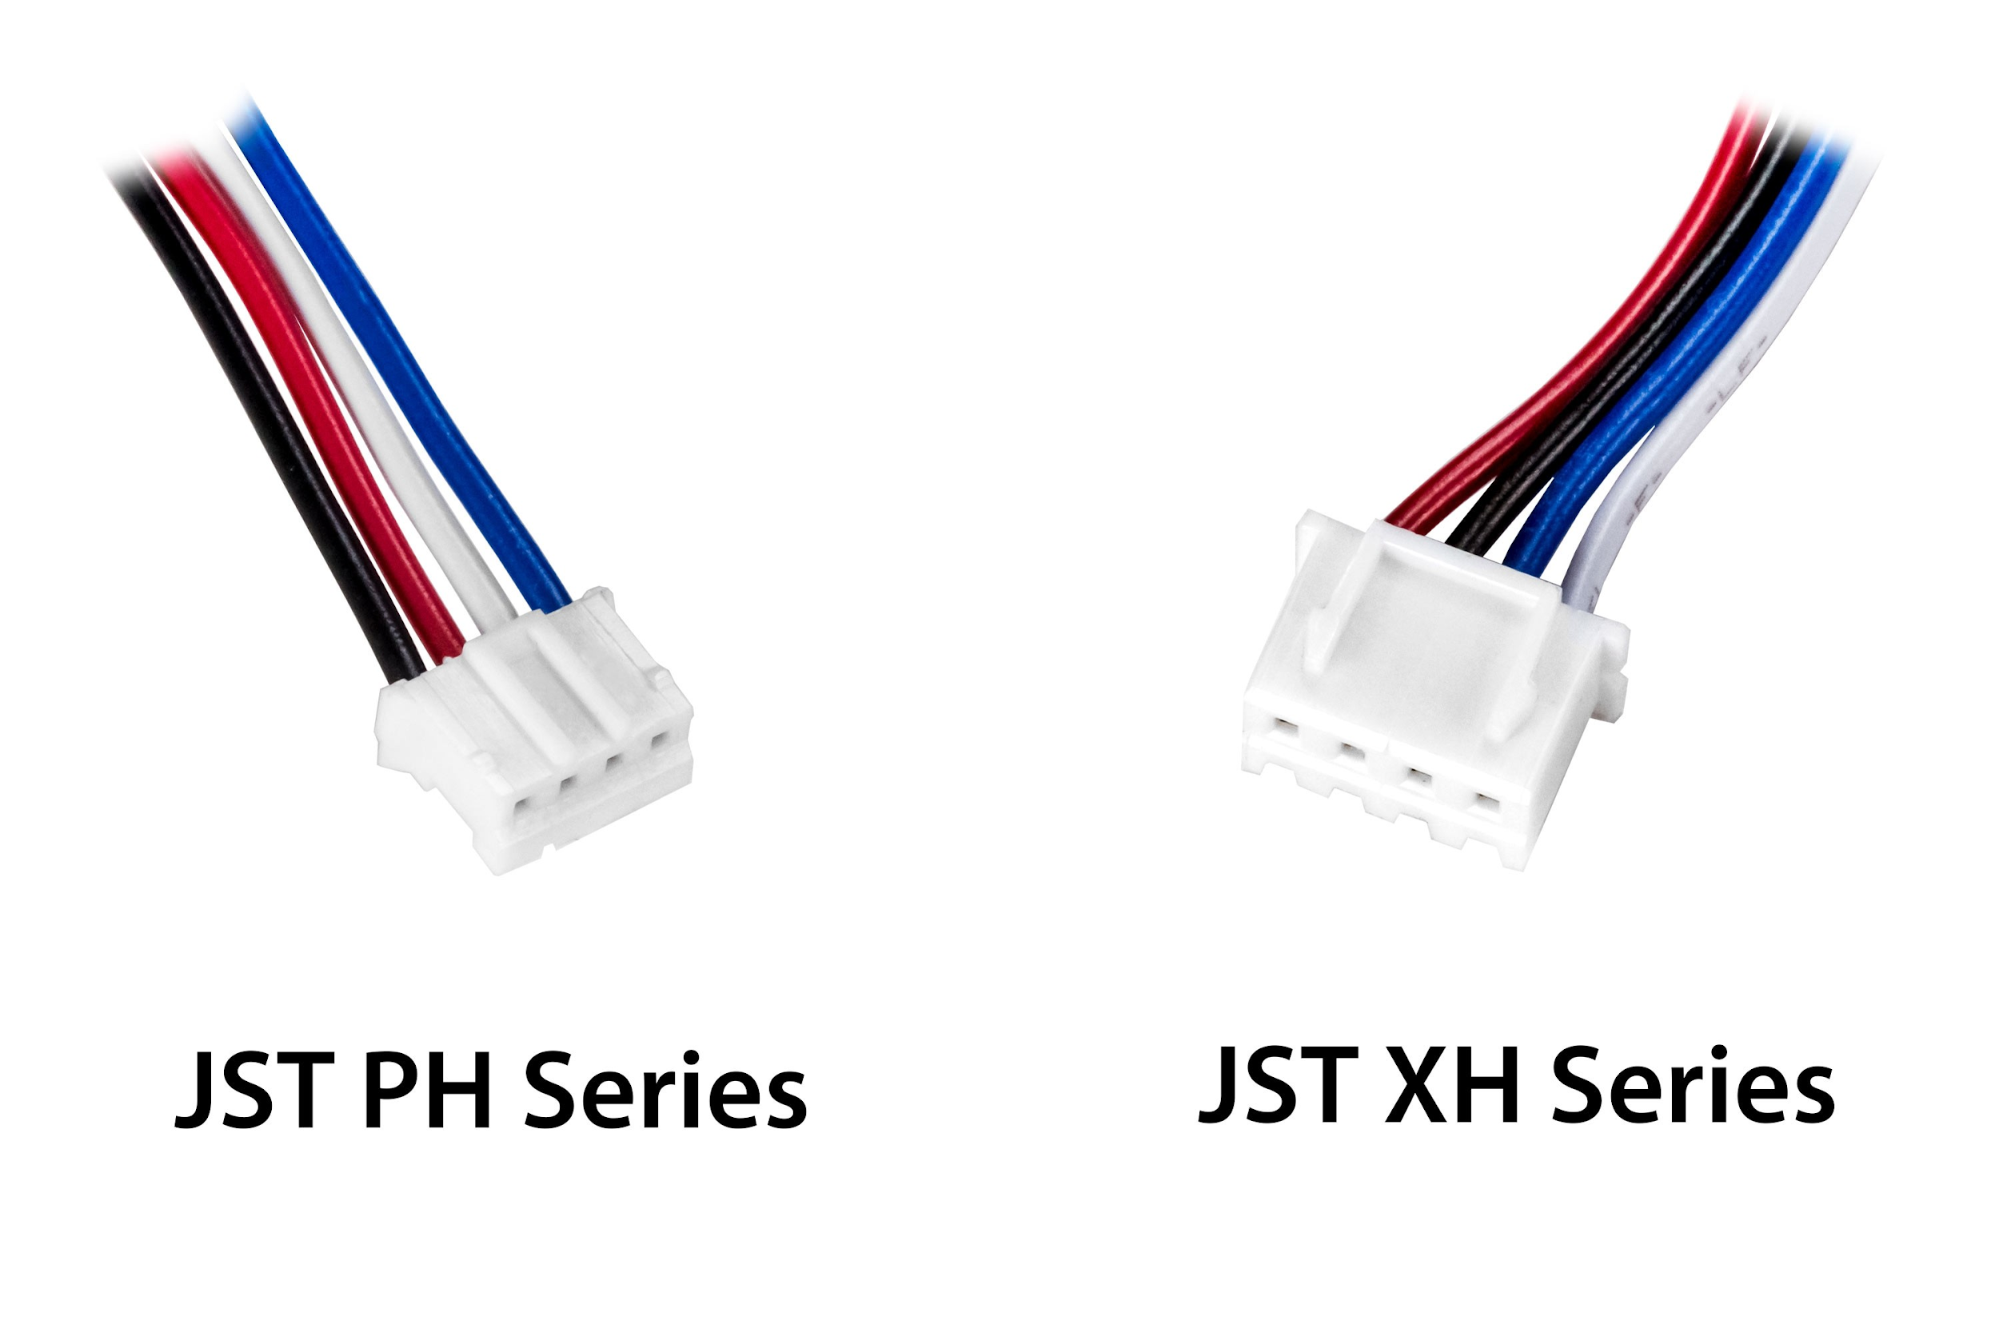 JST-PH and JST-XH connectors